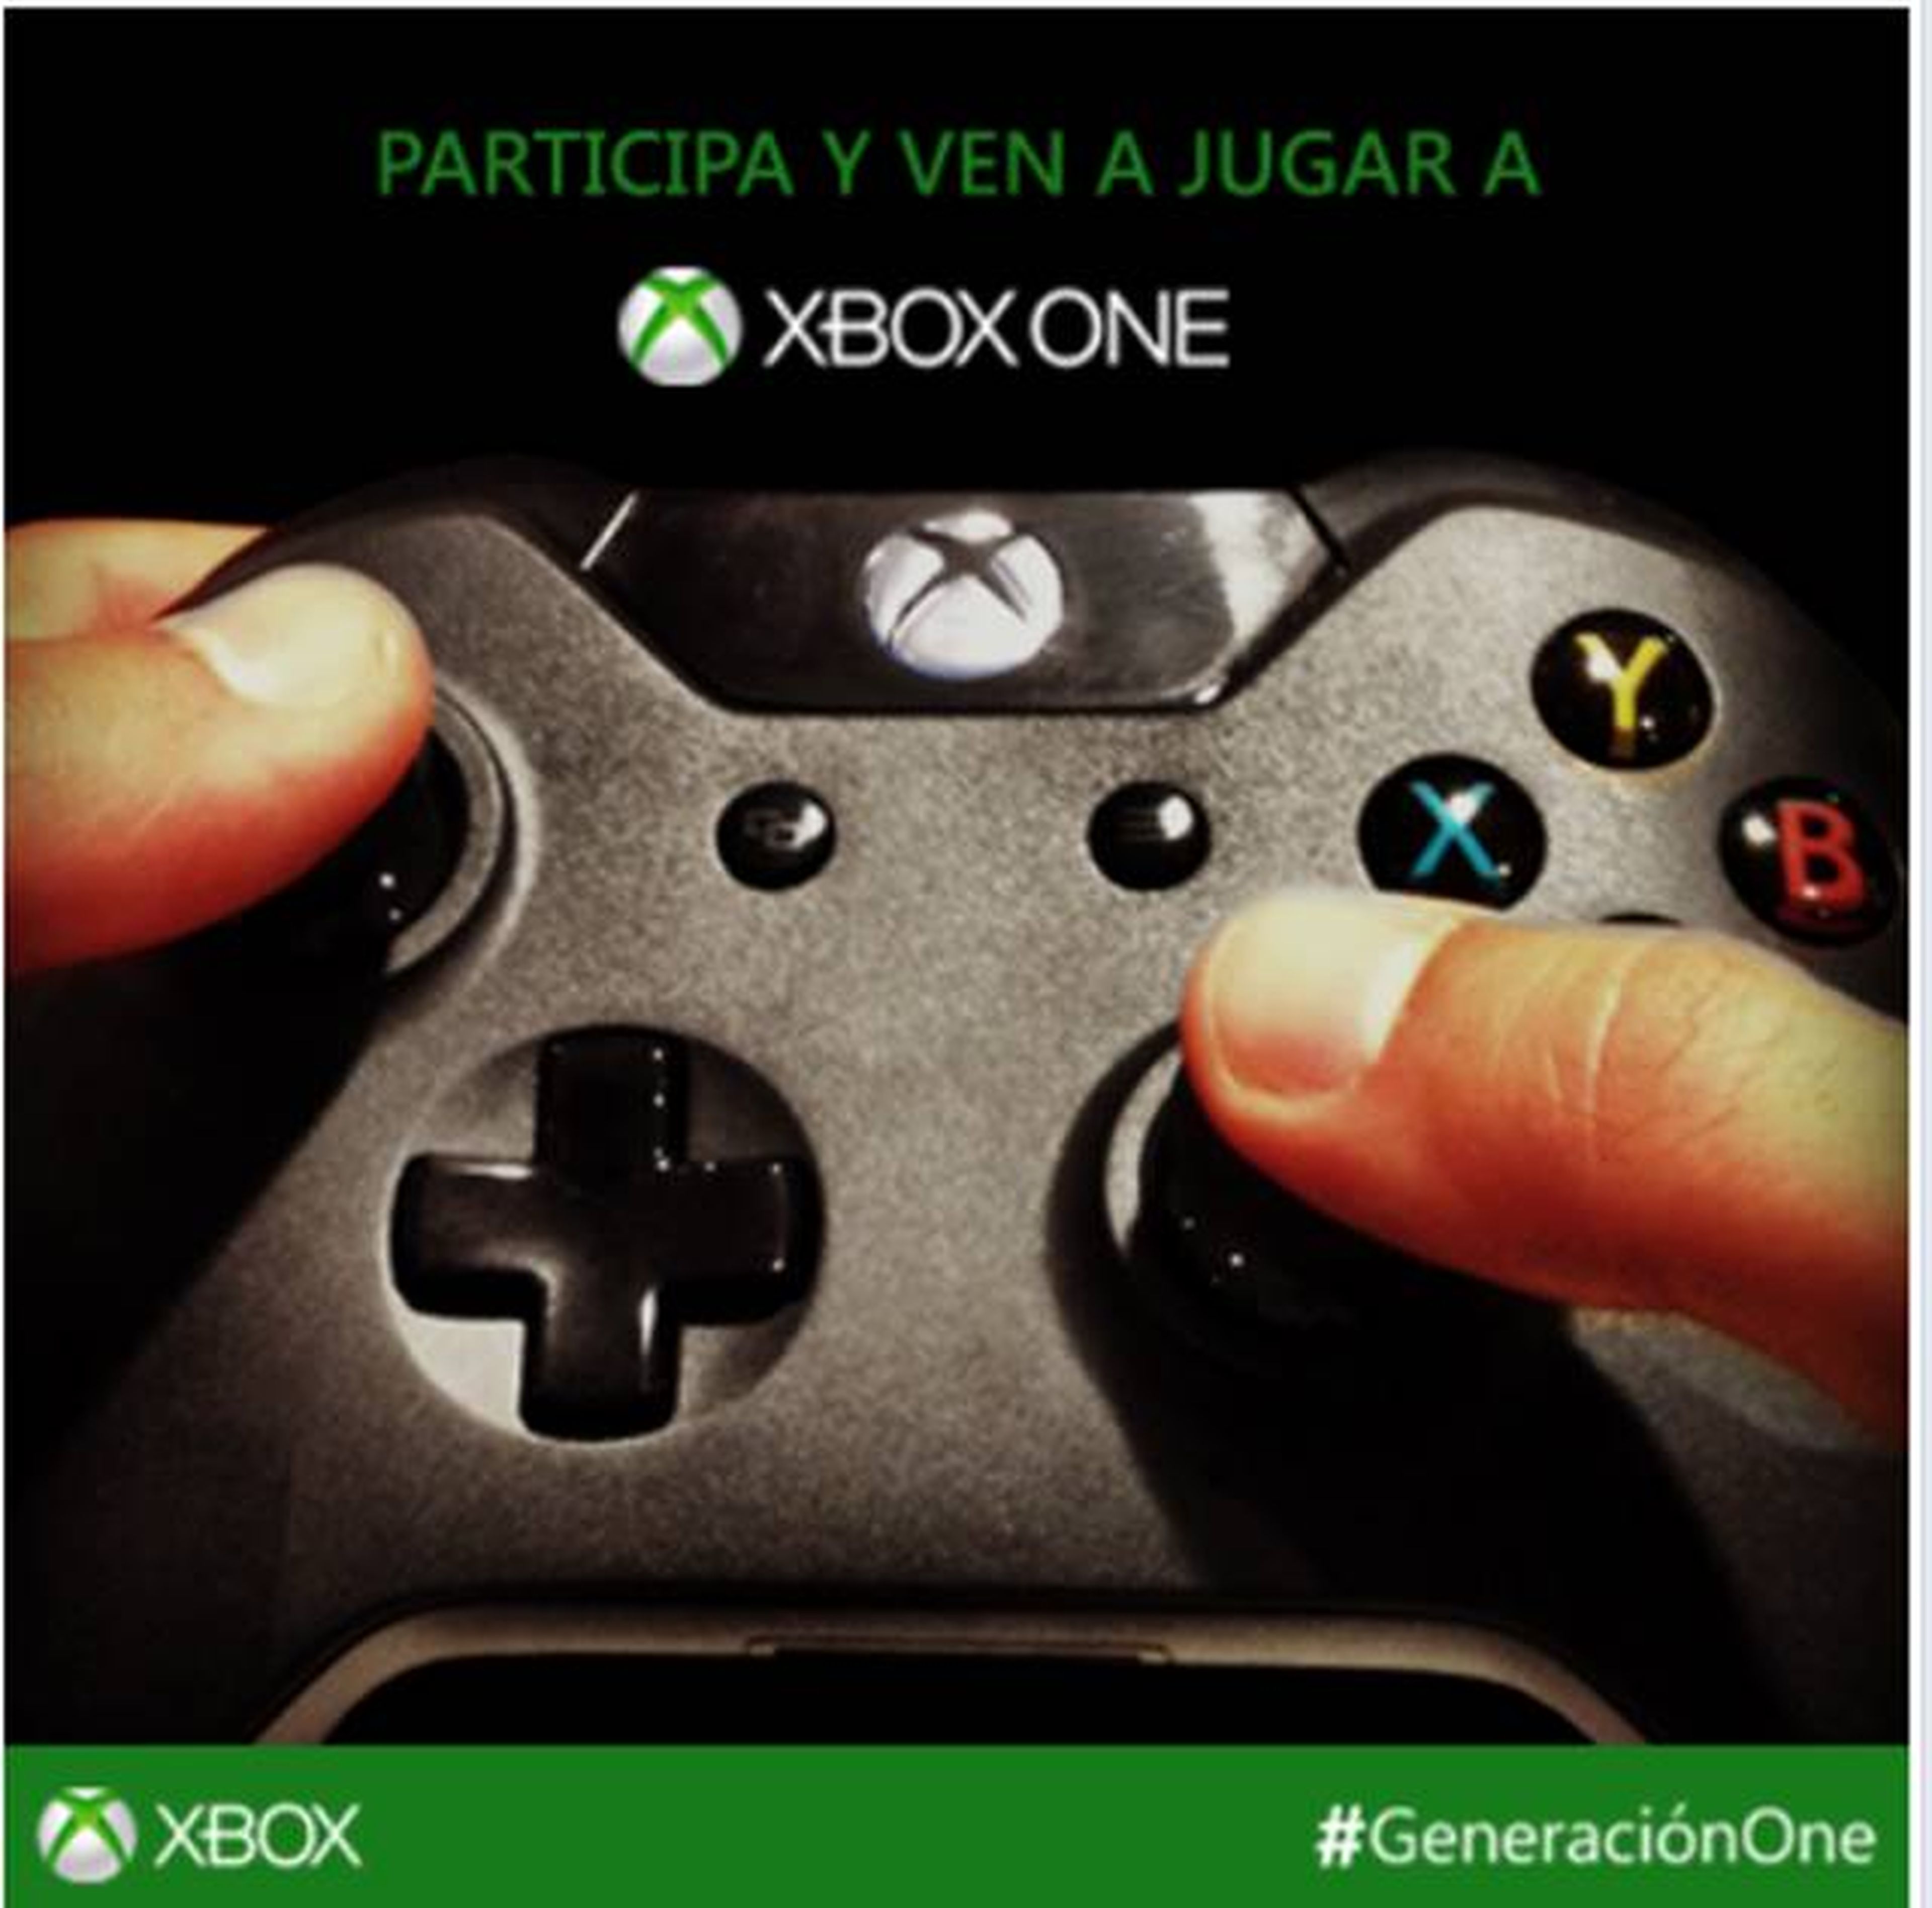 Concurso Xbox One